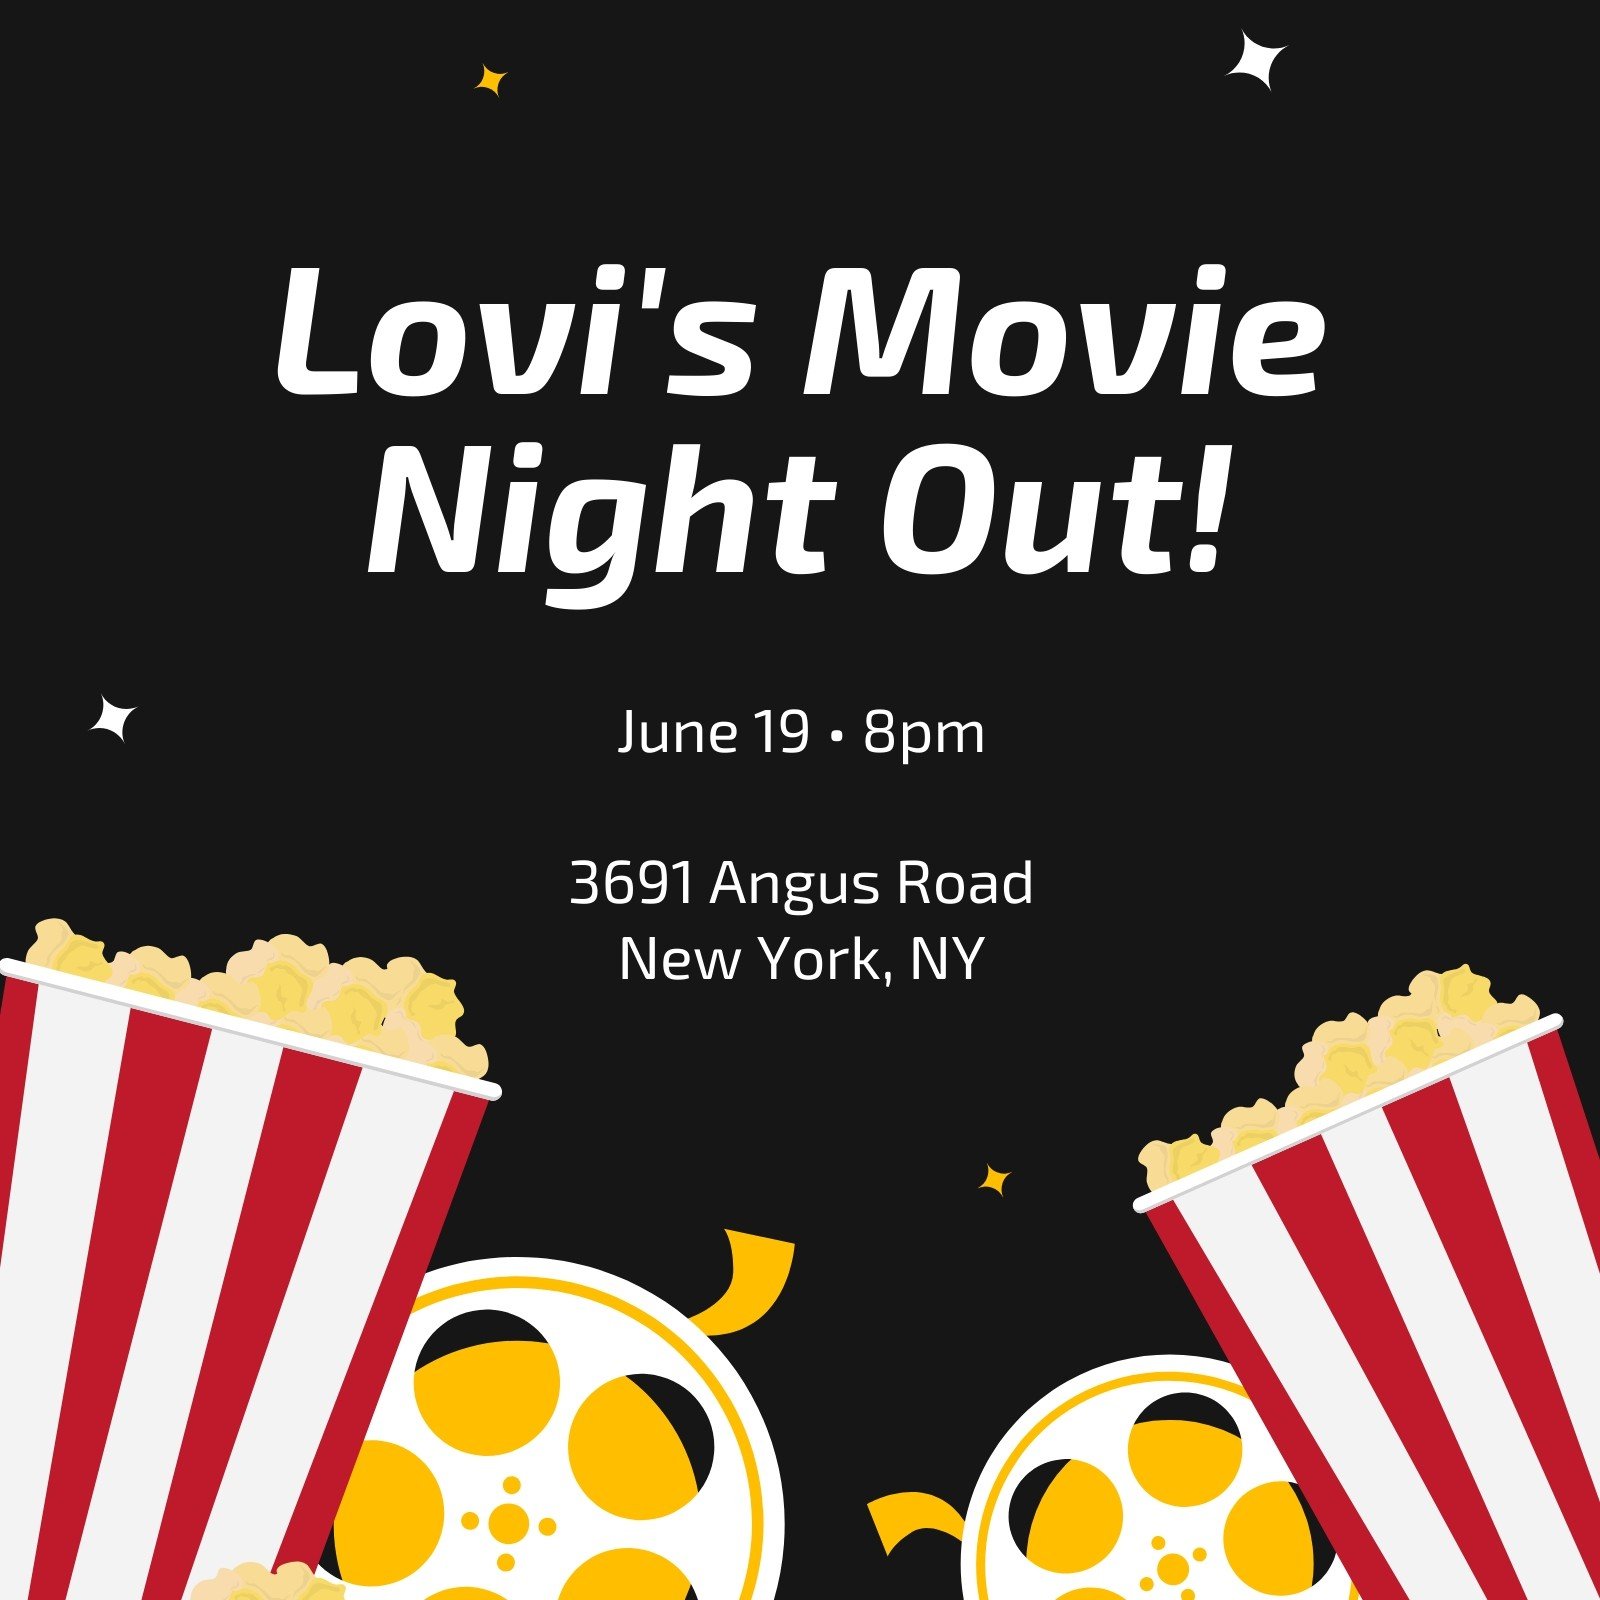 Free custom printable movie night invitation templates Canva